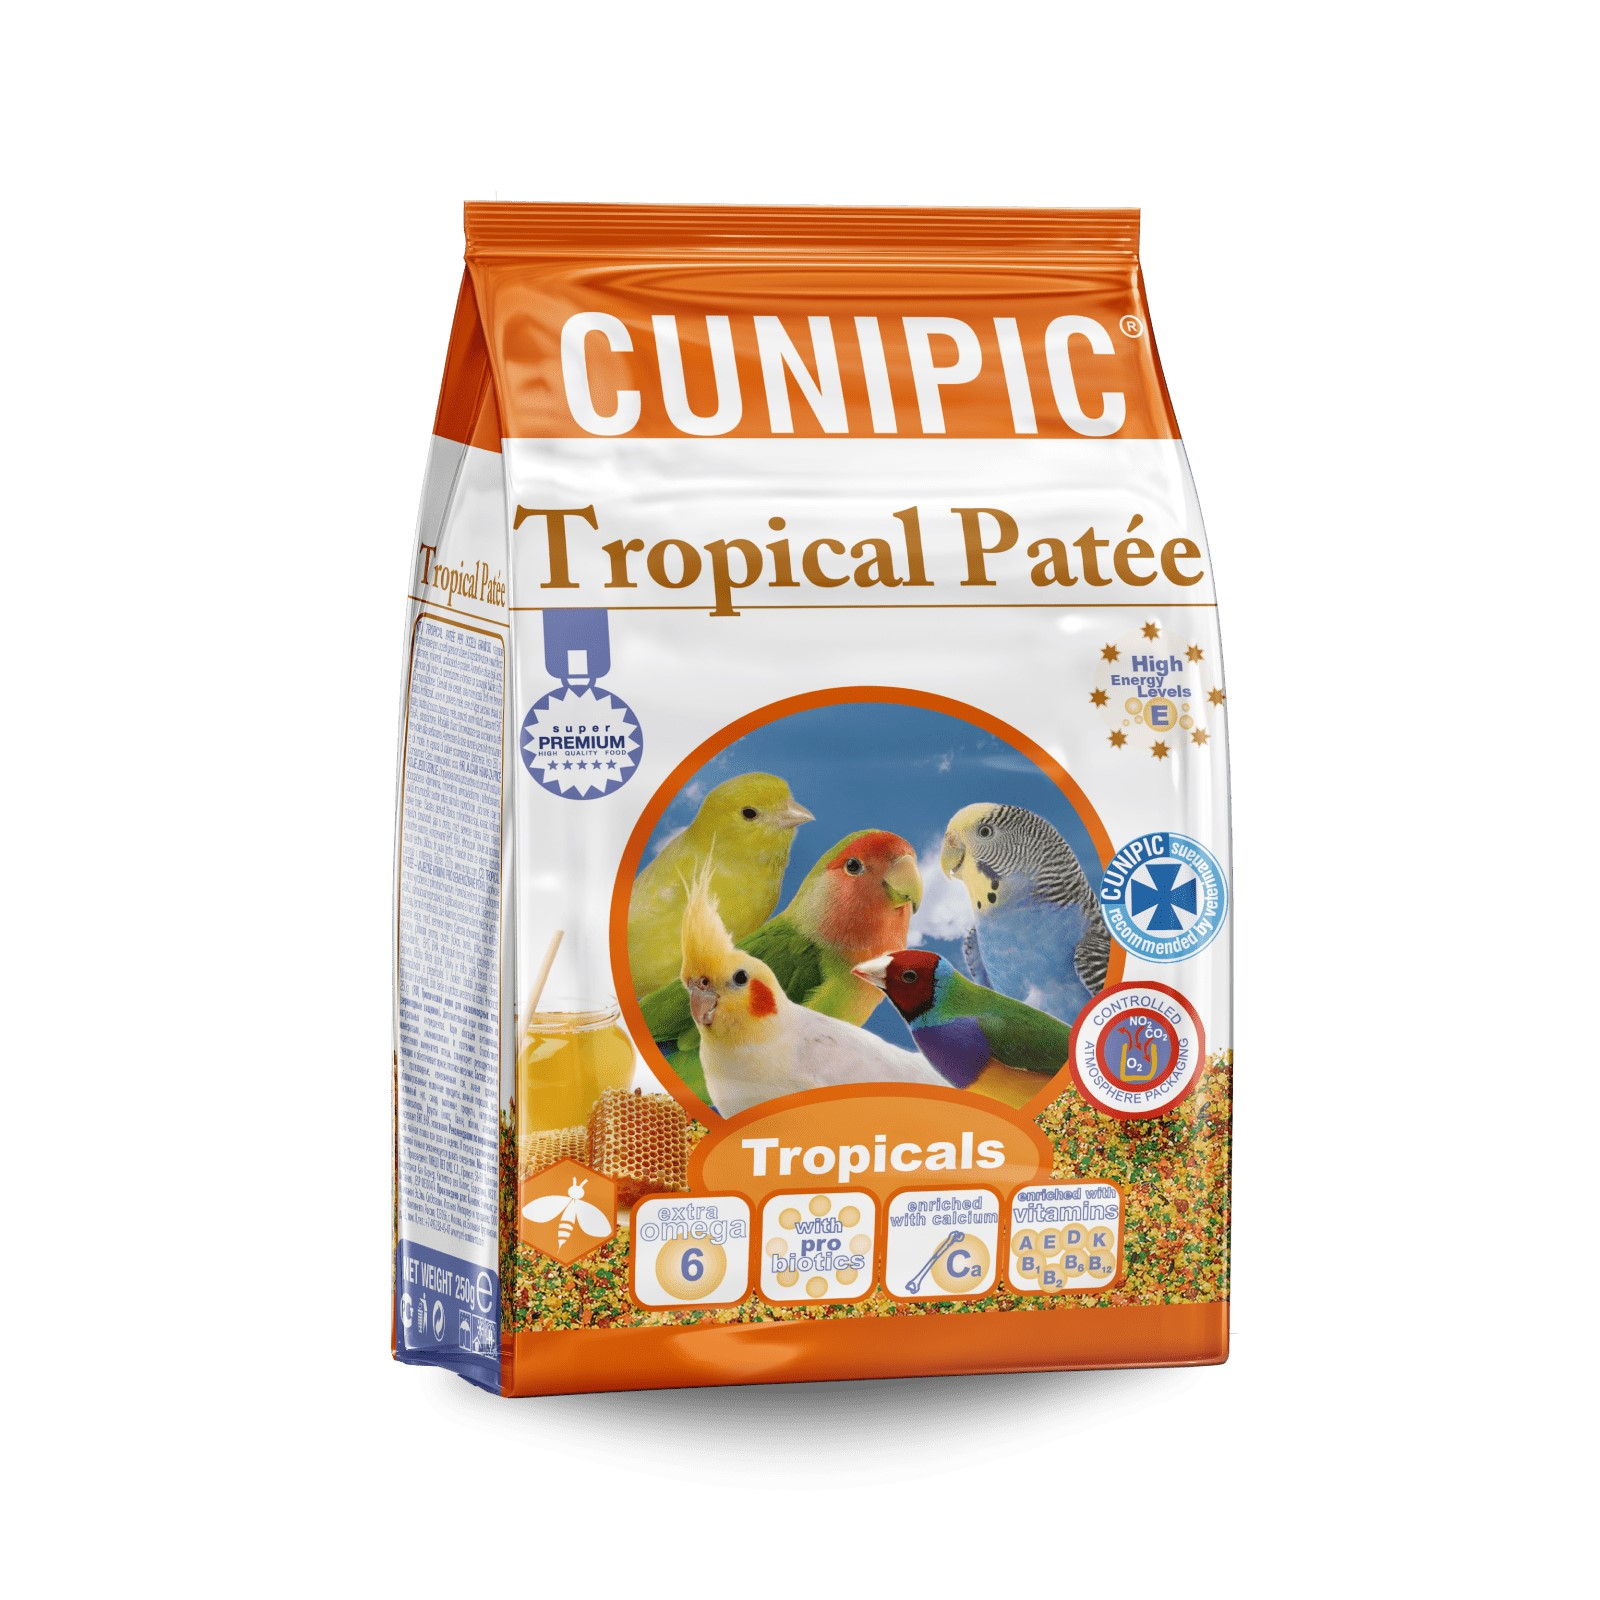 Cunipic Premium Tropical Paté fortificante per uccelli tropicali